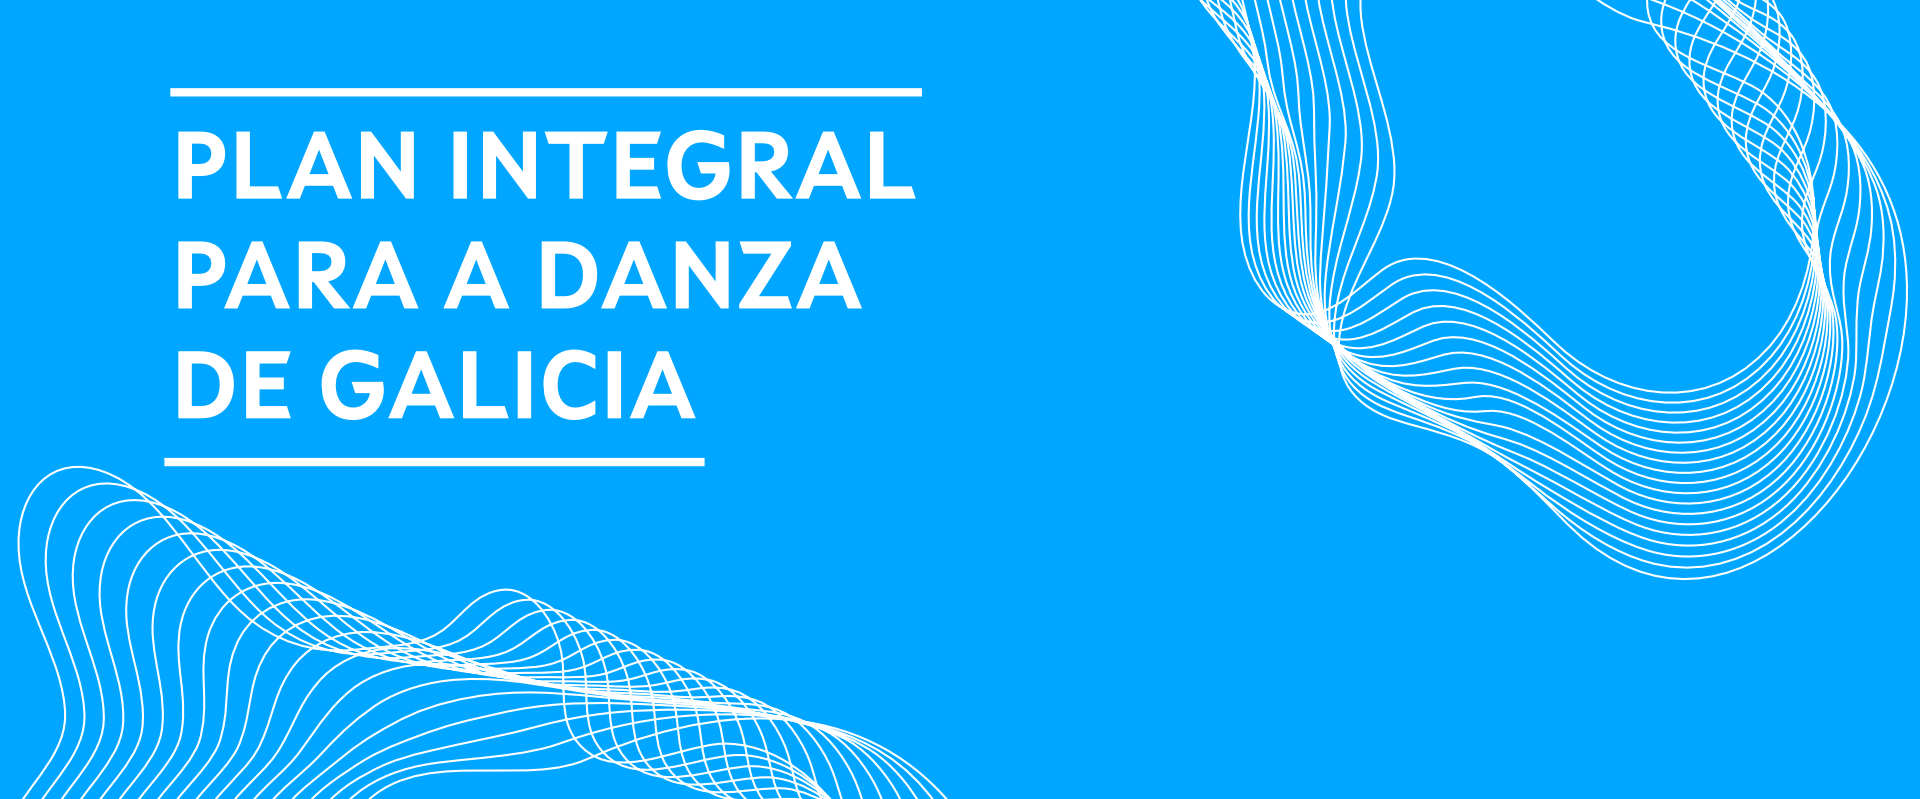 Banner do Plan Integral para a Danza de Galicia